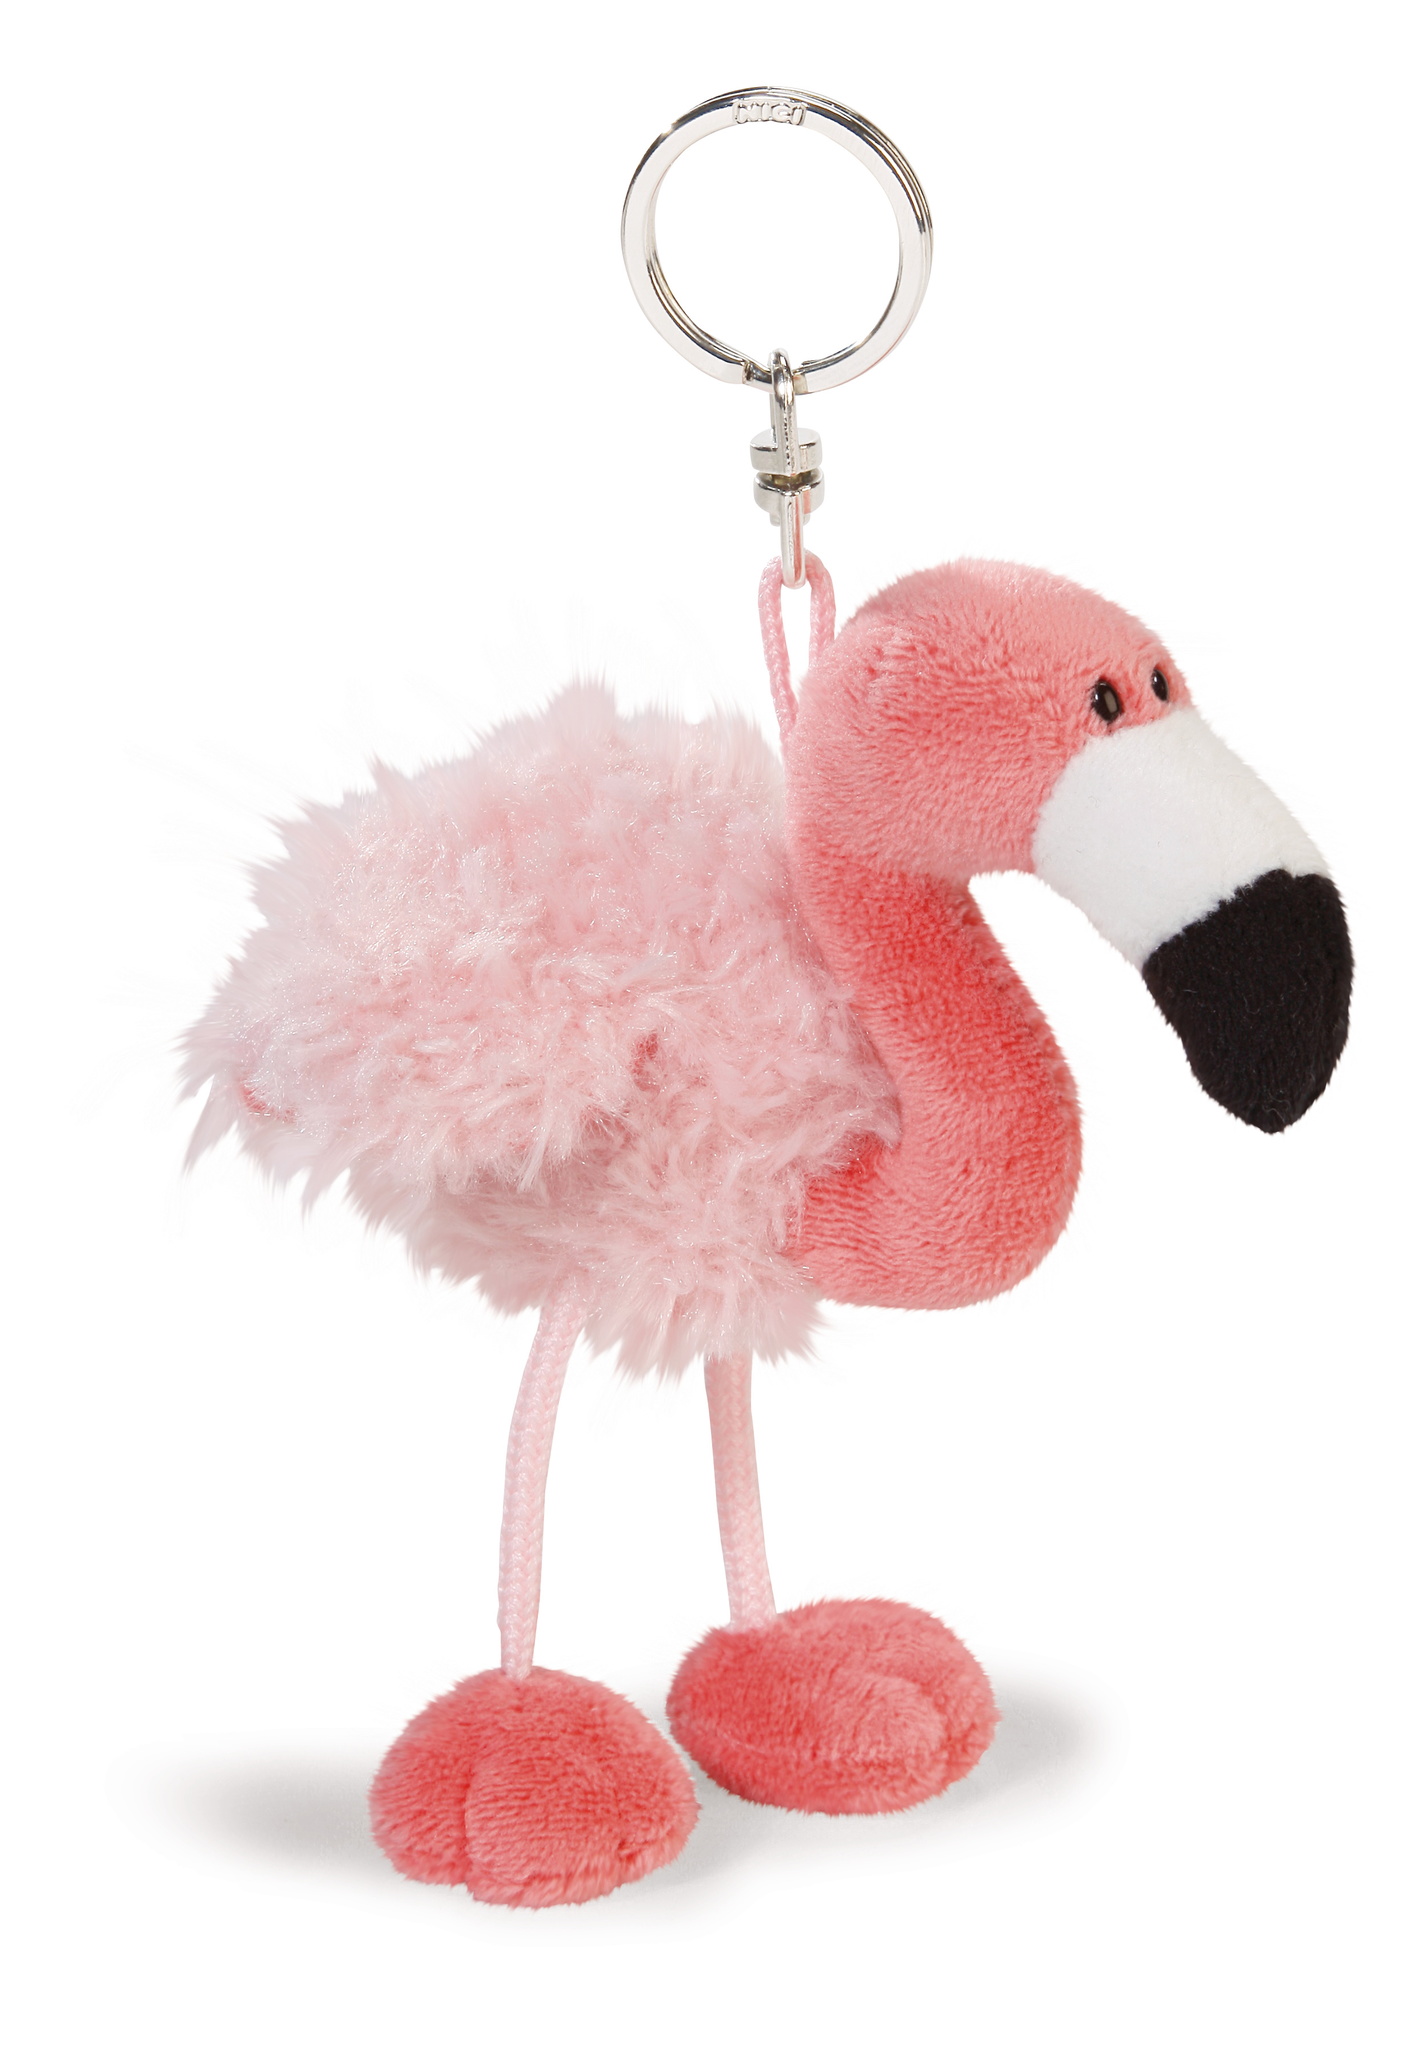 Flamingo Plüschtier Schlüsselbund Anhänger Stofftier Schlüsselanhänger RuckRSH5 